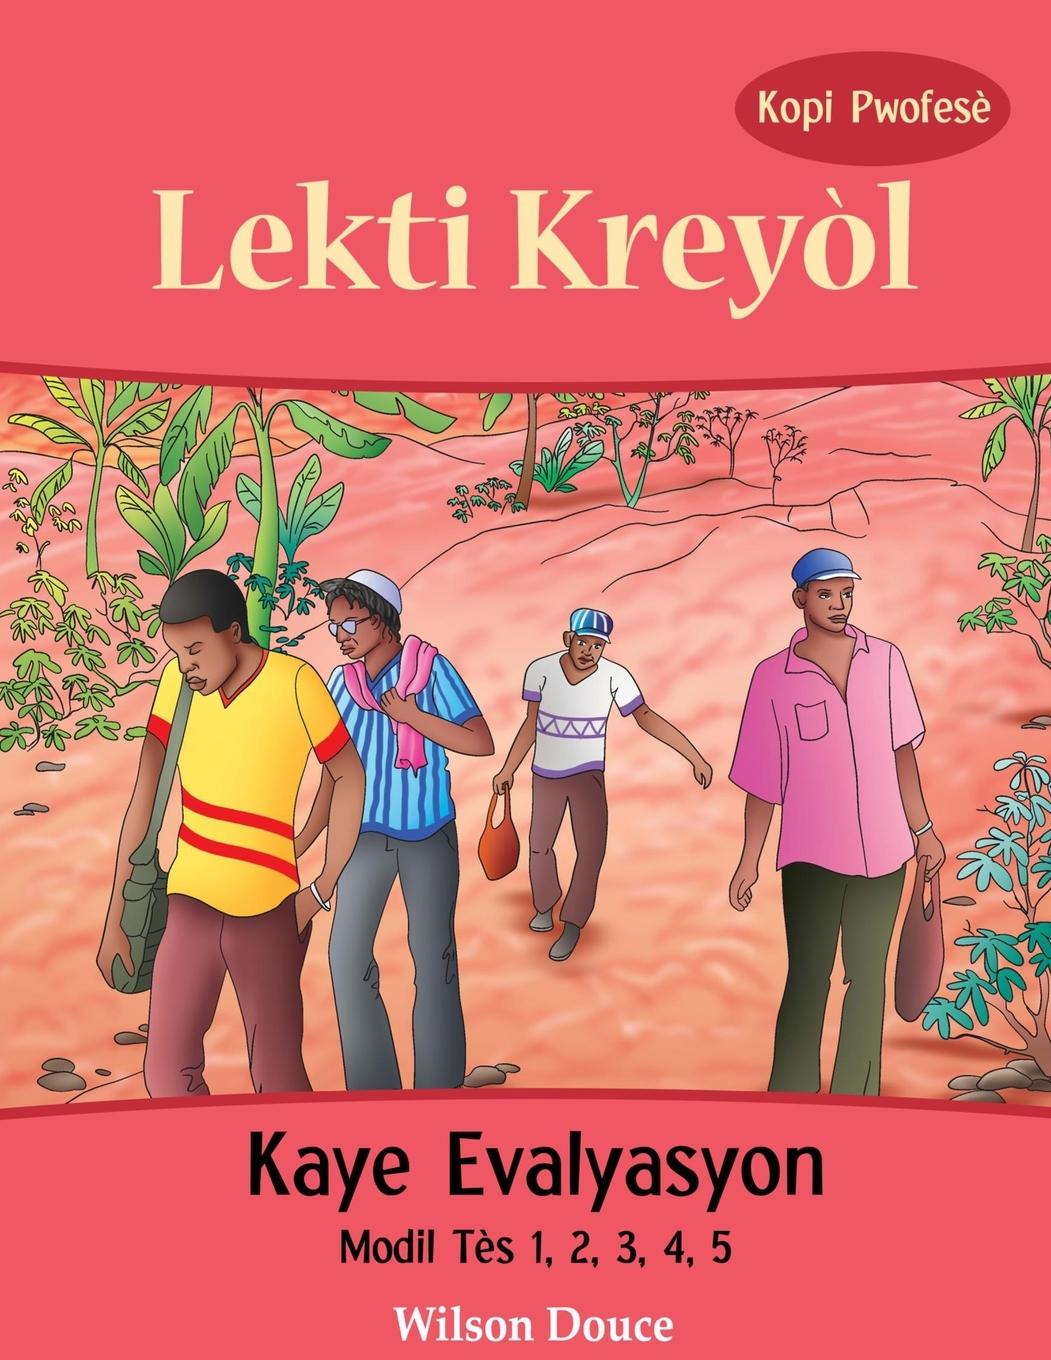 Kniha Lekti Kreyol Kaye Evalyasyon Kopi Pwofese 